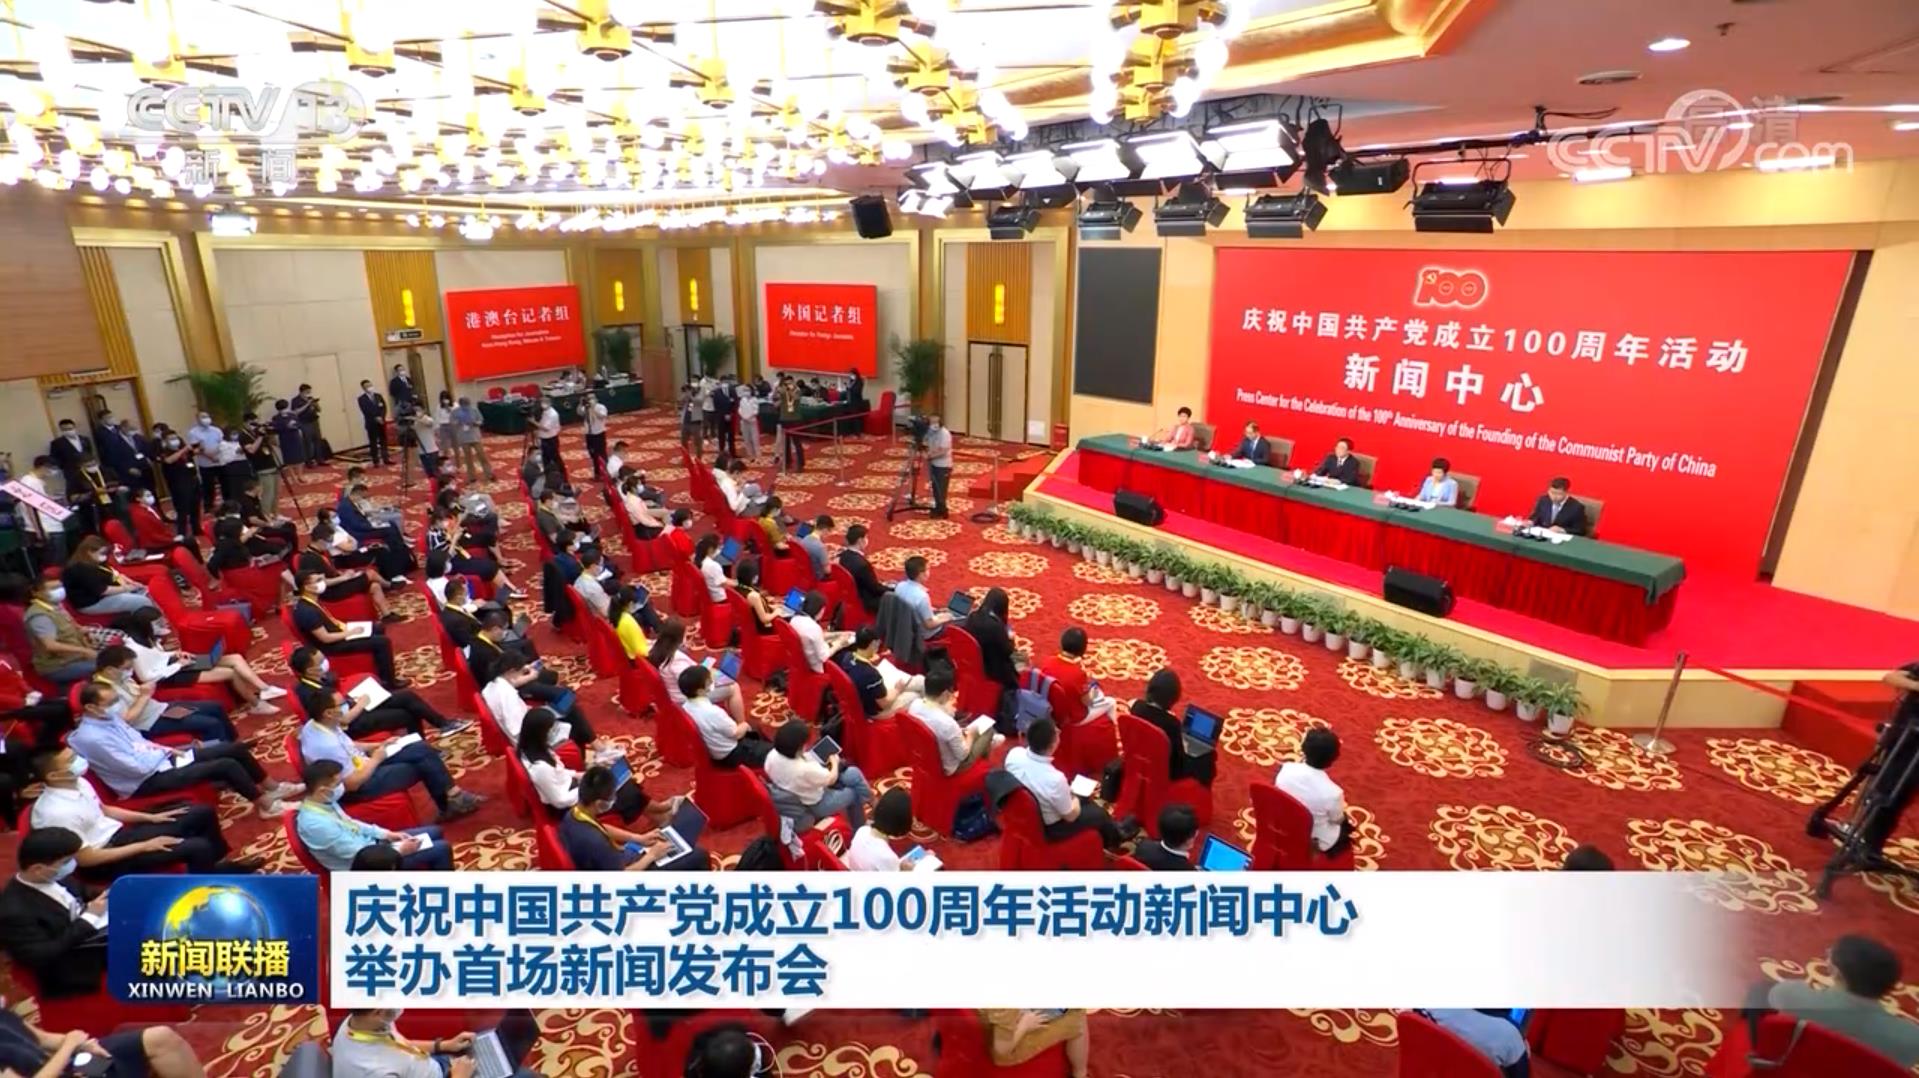 庆祝中国共产党成立100周年活动新闻中心举办首场新闻发布会